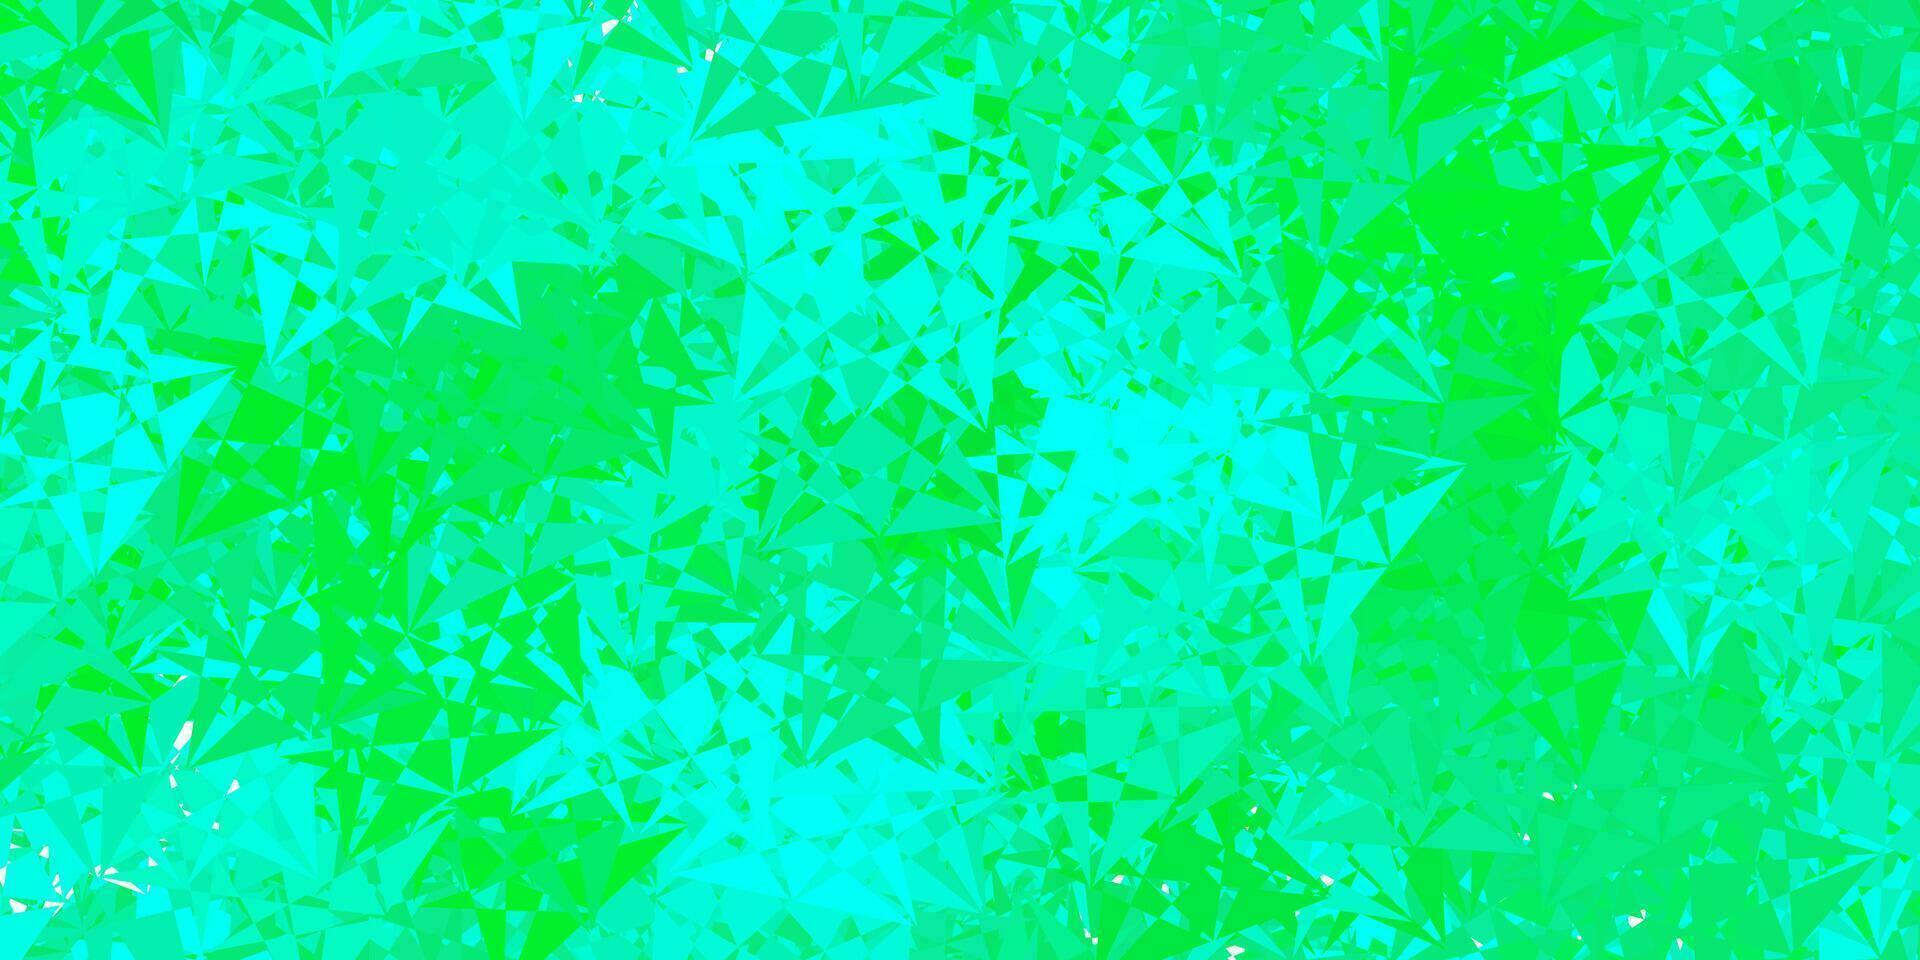 textura de vetor verde claro com triângulos aleatórios.